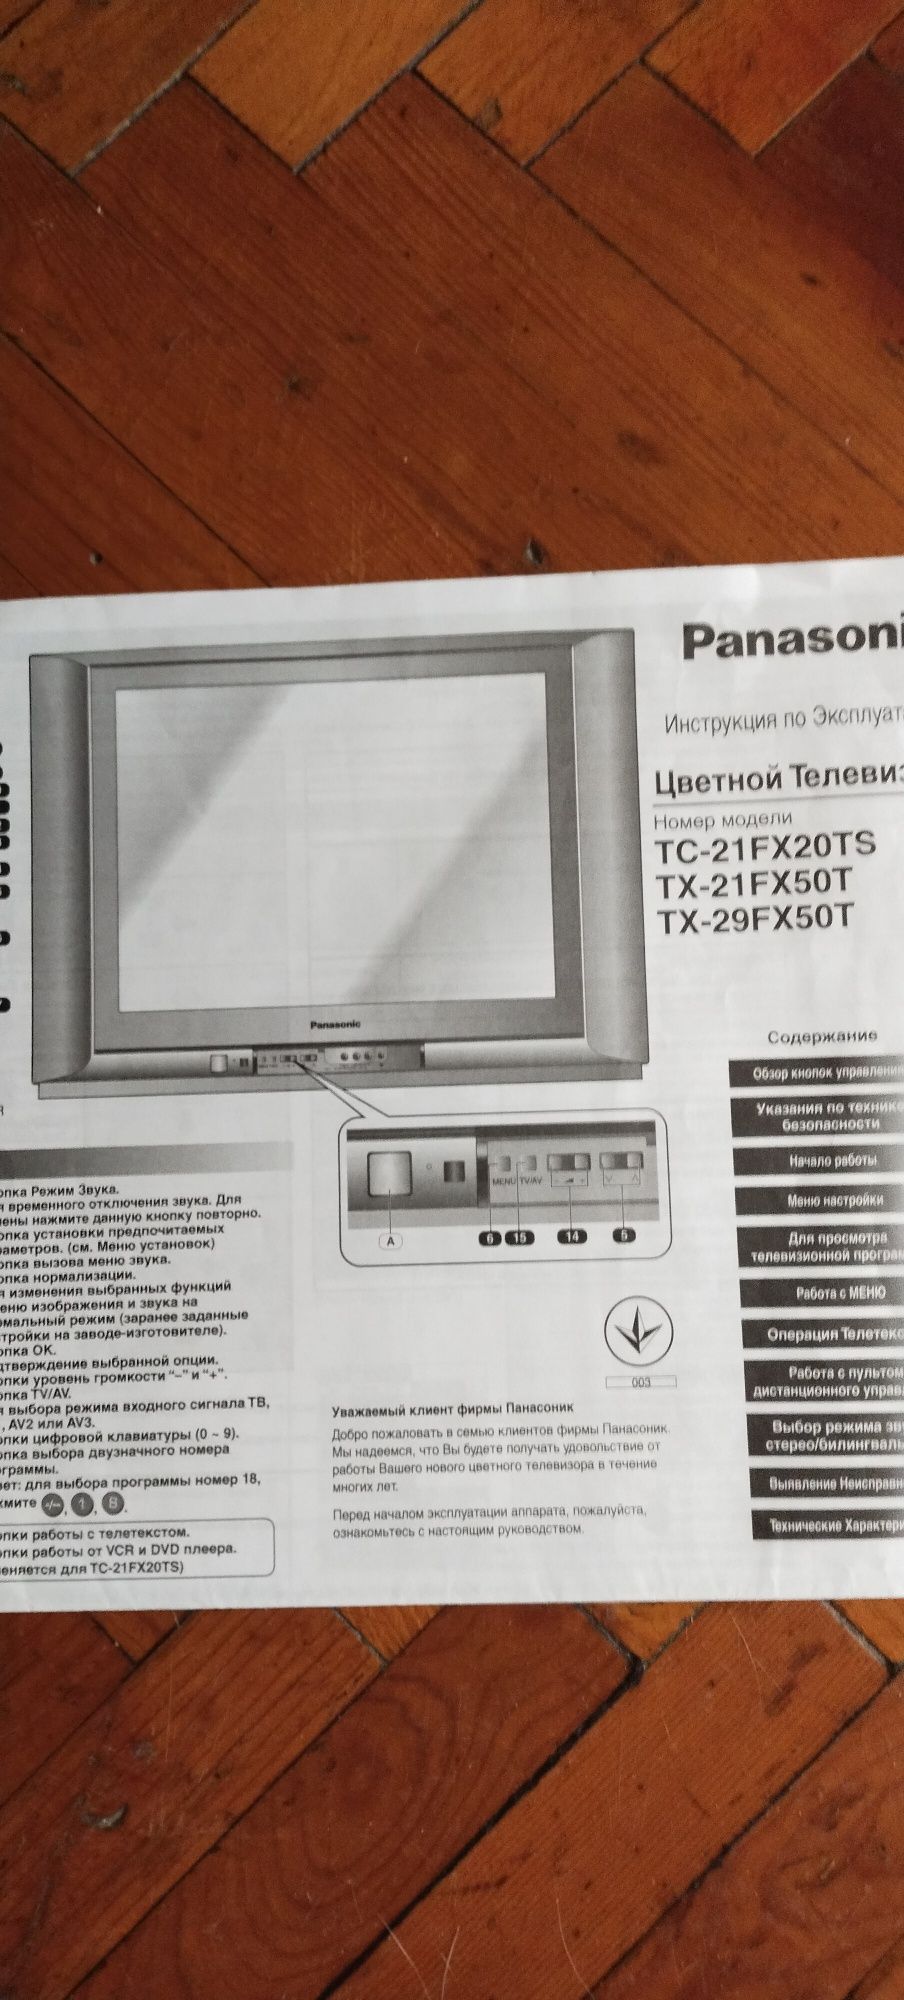 Panasonic   телевизор в хорошем состоянии, рабочий